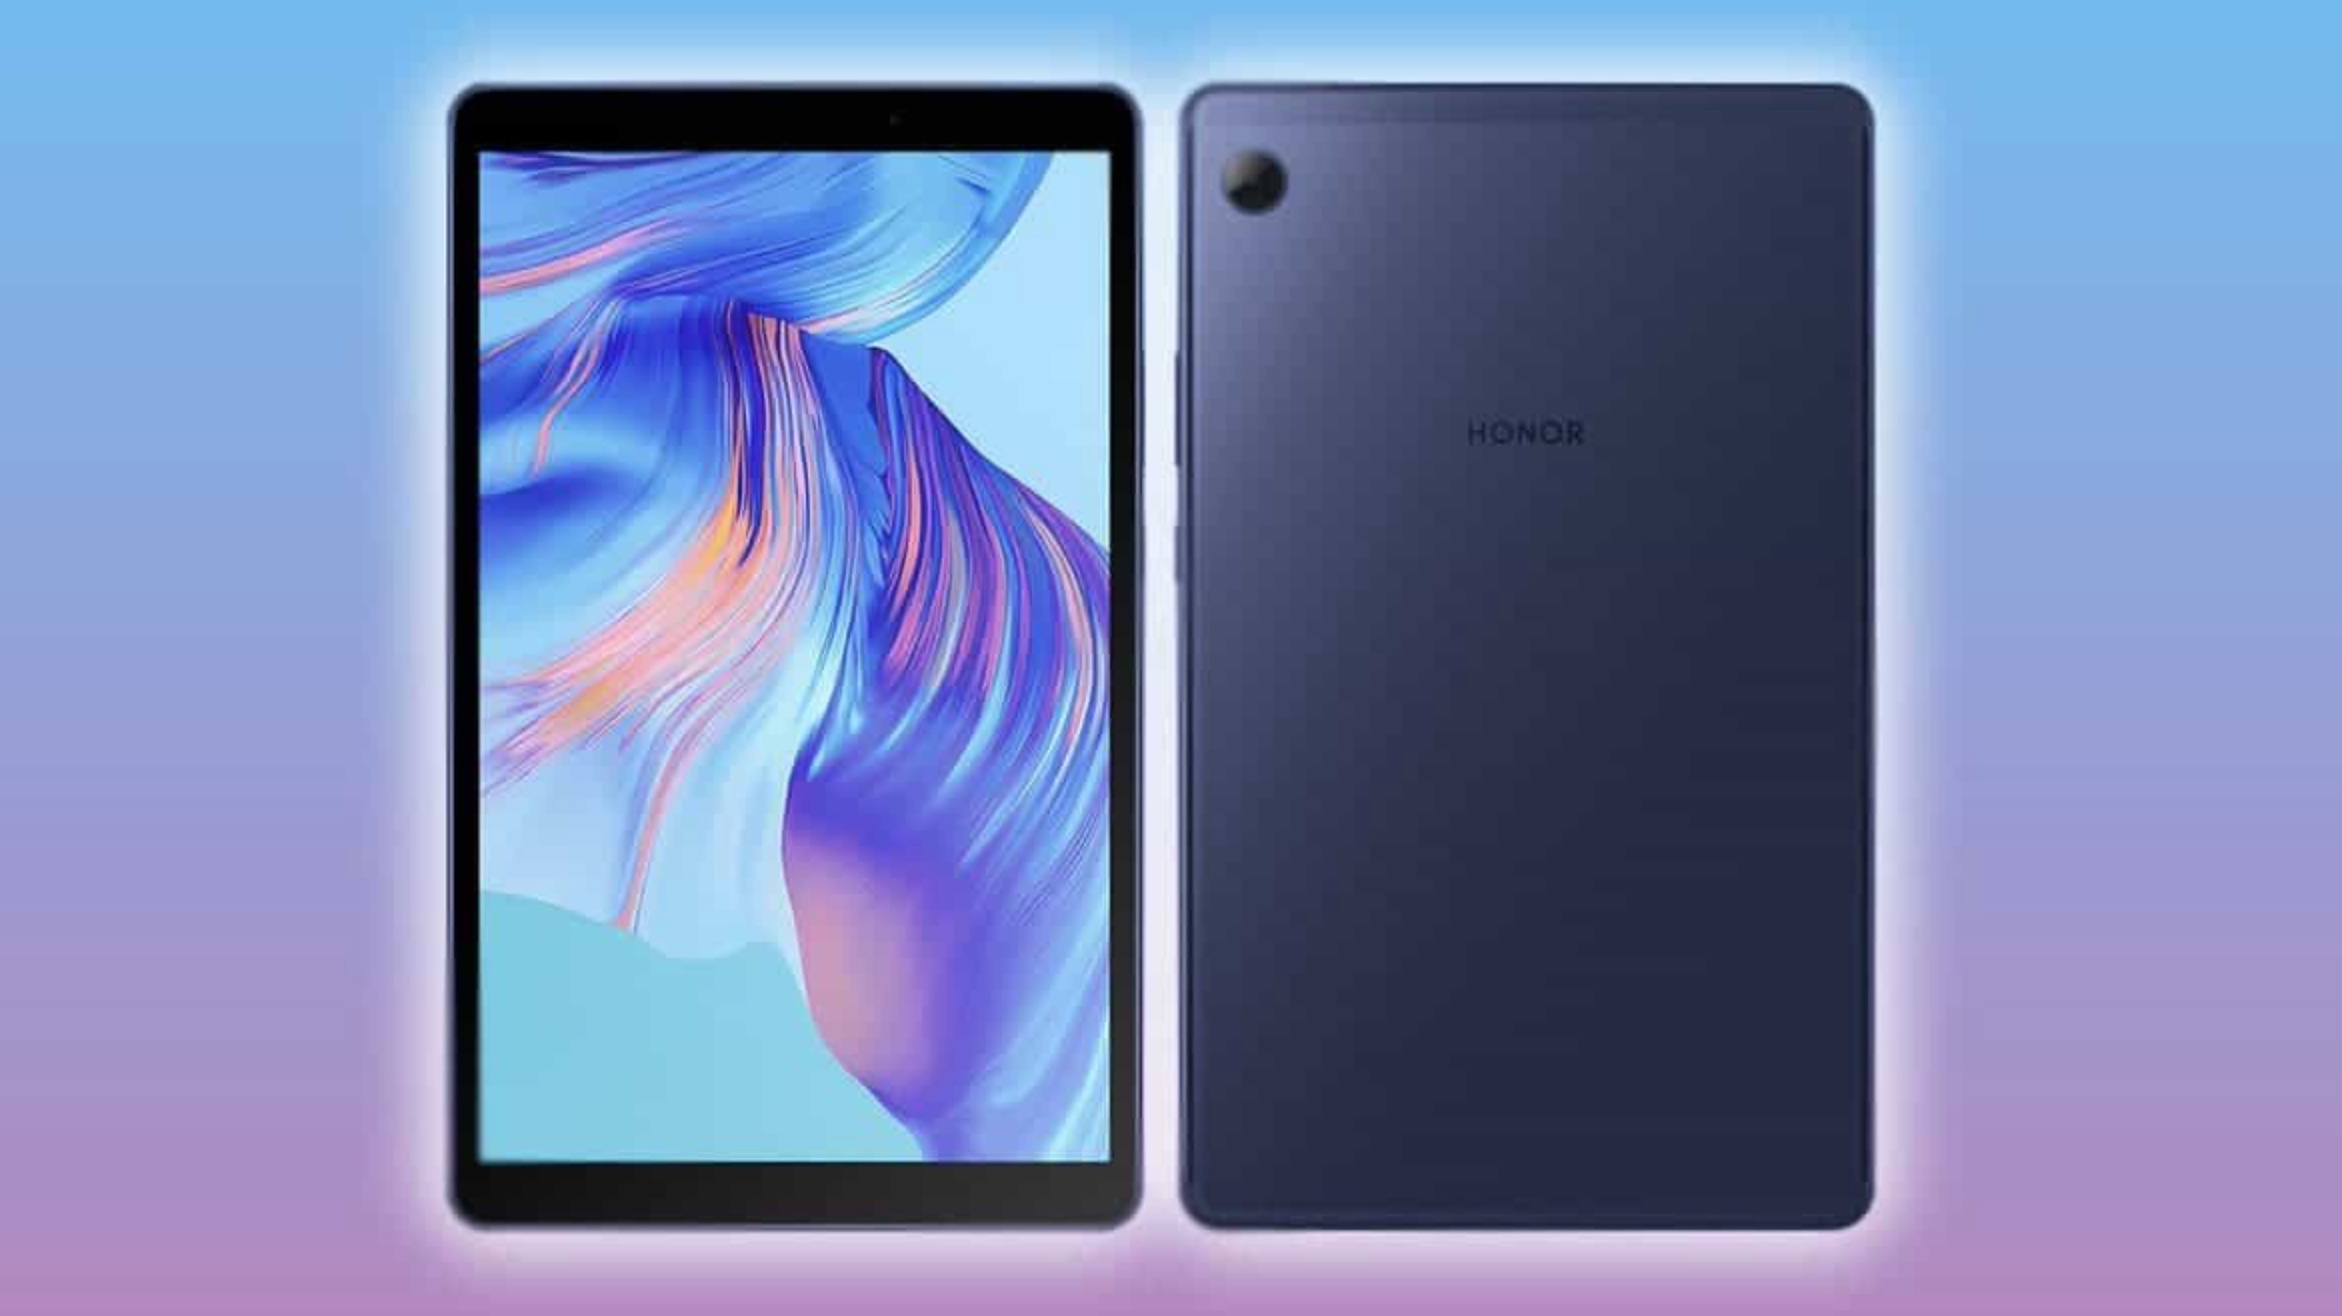 صورة نظرة عن قرب على تابلت Honor Tablet X7 الجديد من هونور